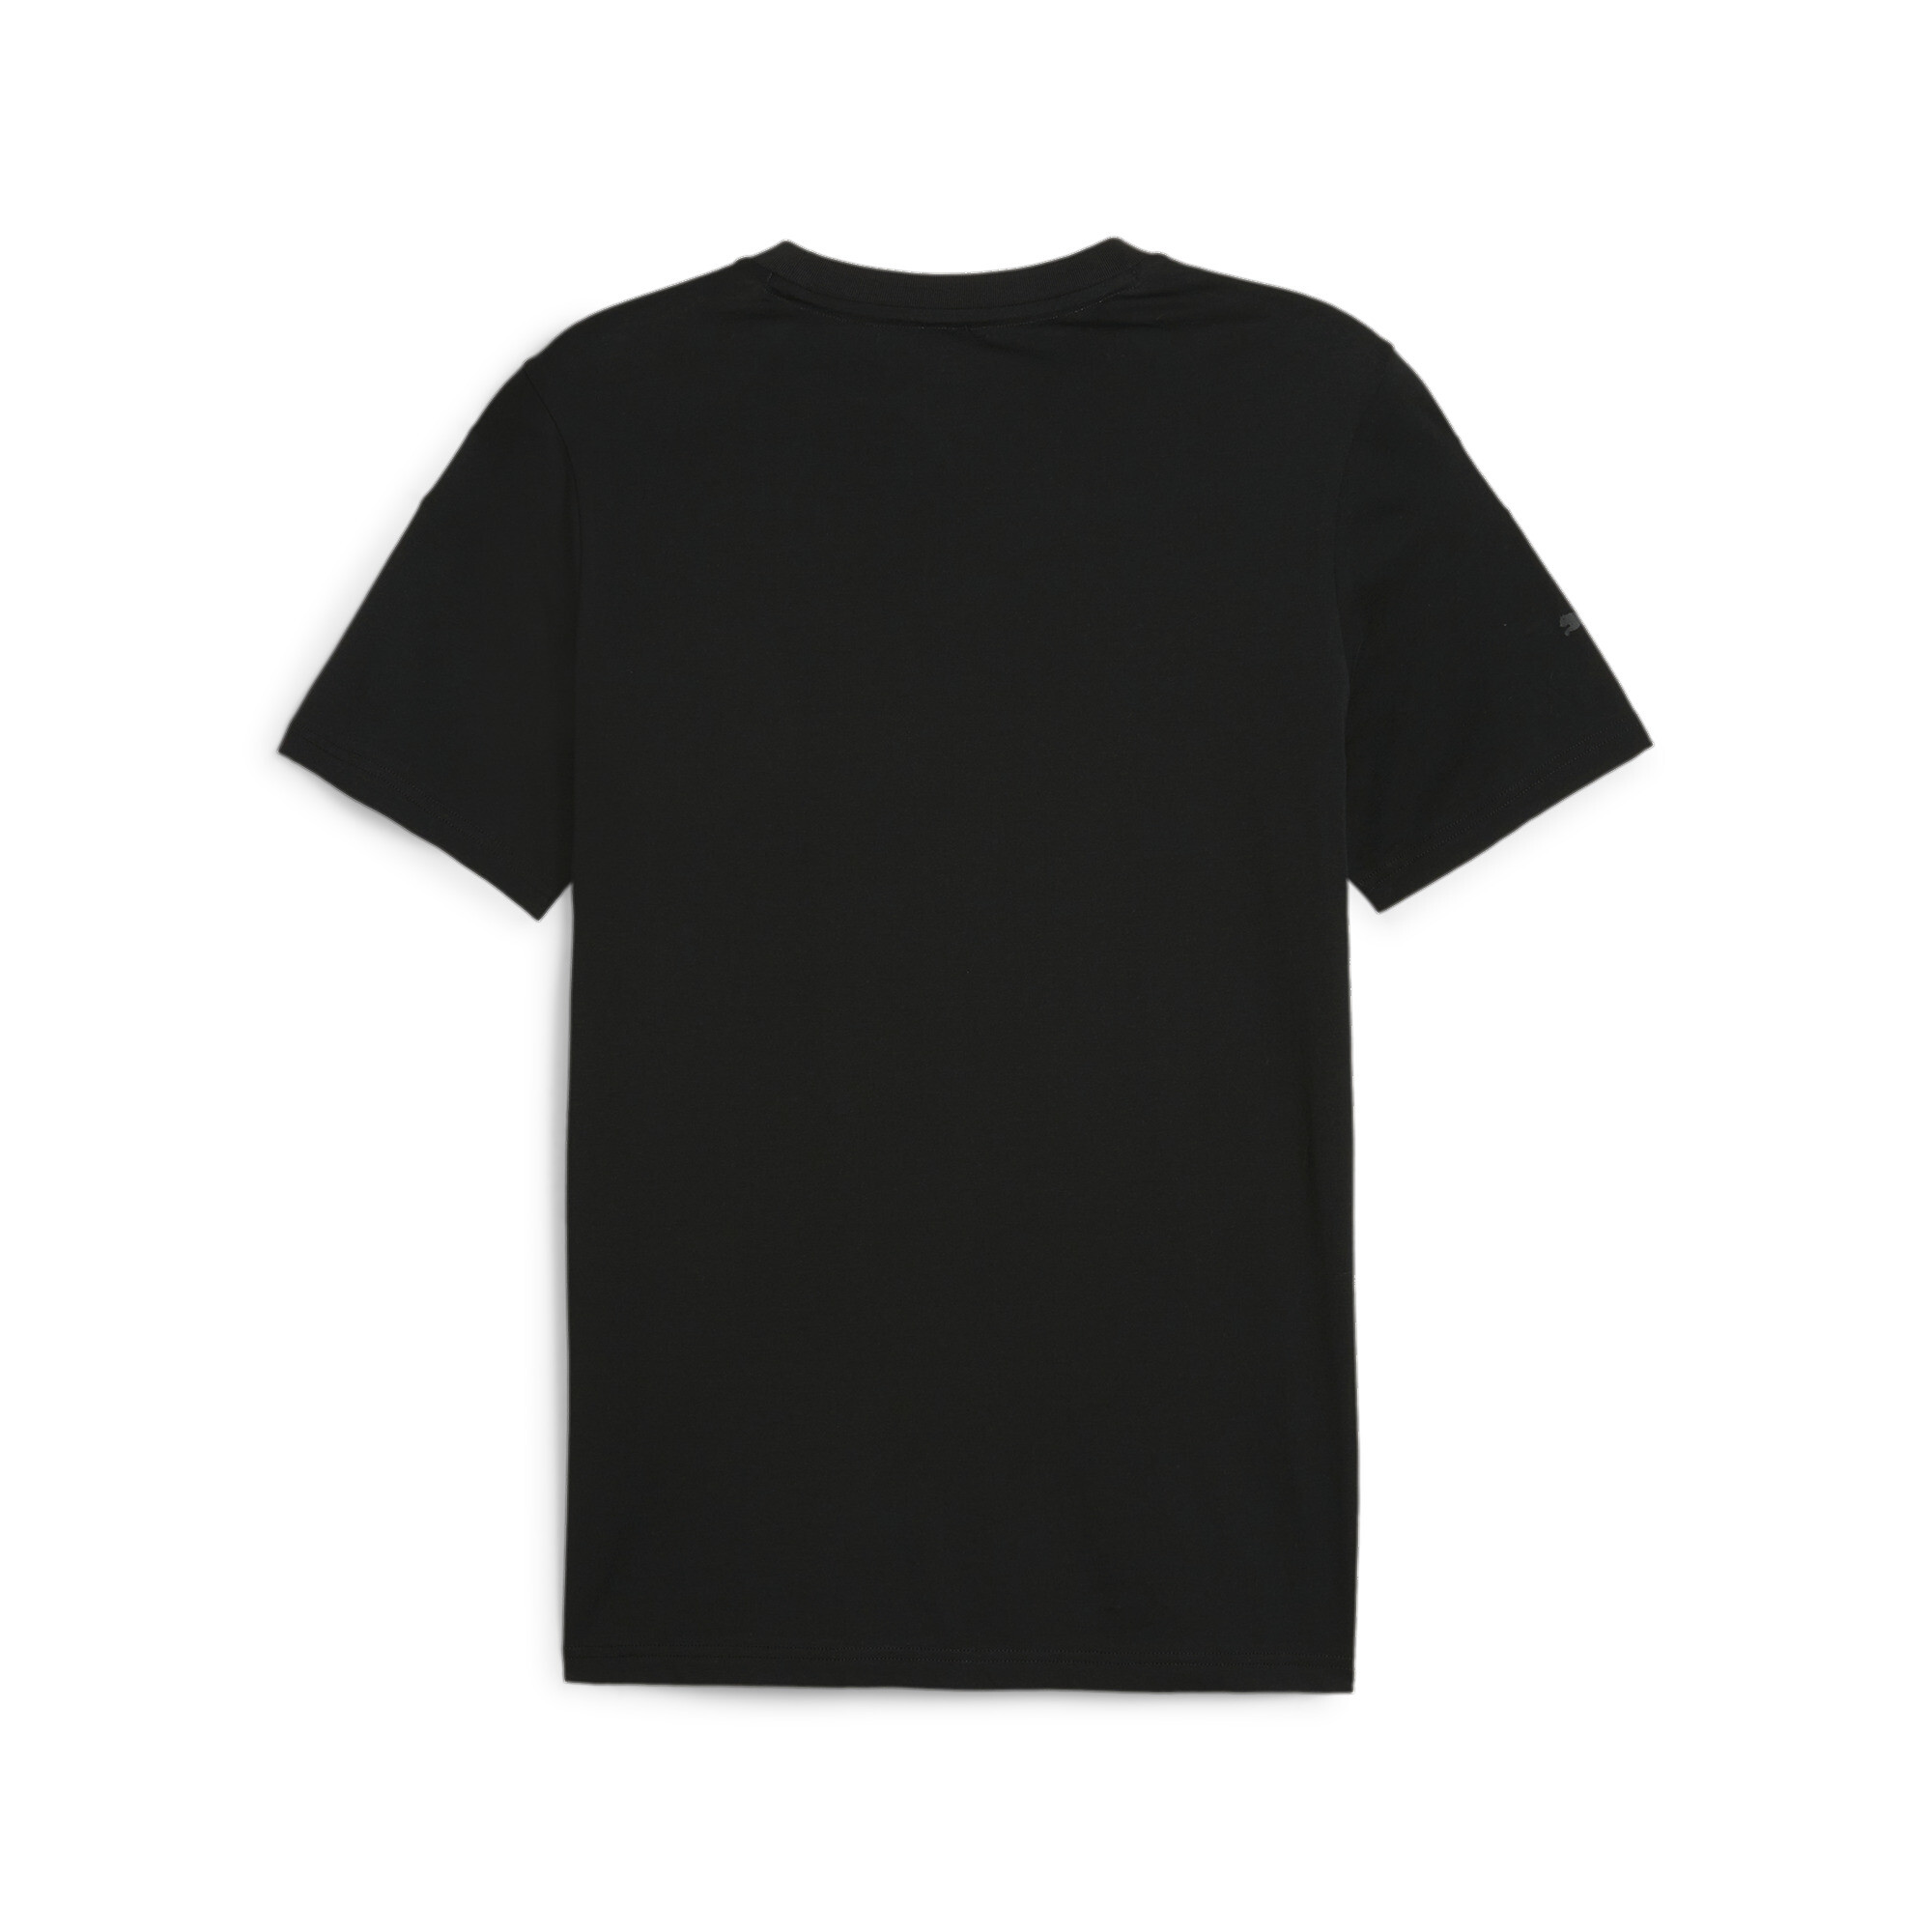 Men's Puma AMG Motorsports T-Shirt, Black, Size S, Clothing